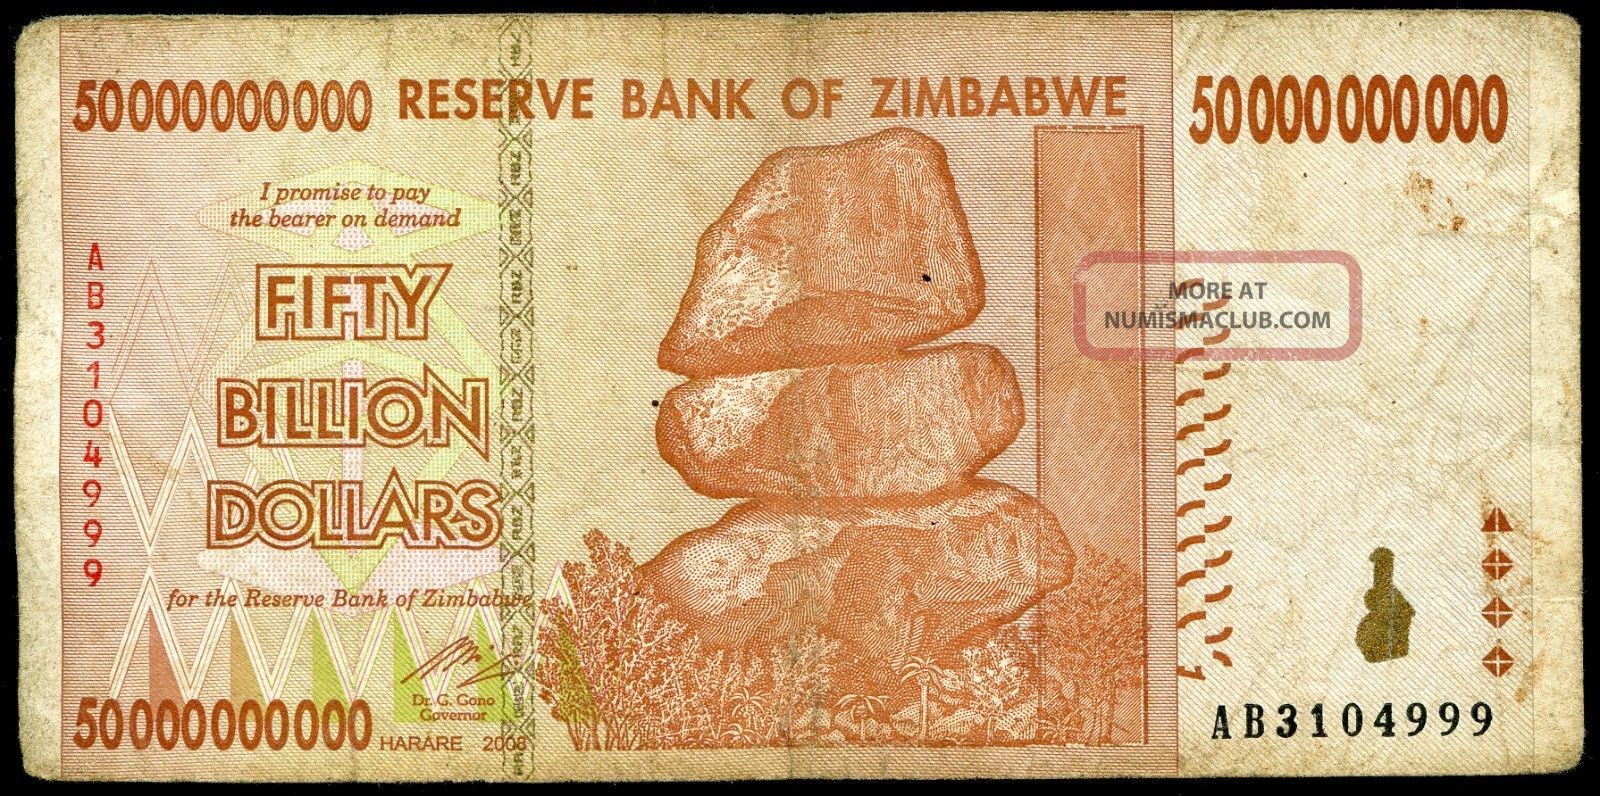 Zimbabwe 50 Billion Dollars 2008 P 87 Vg Circulated Banknote